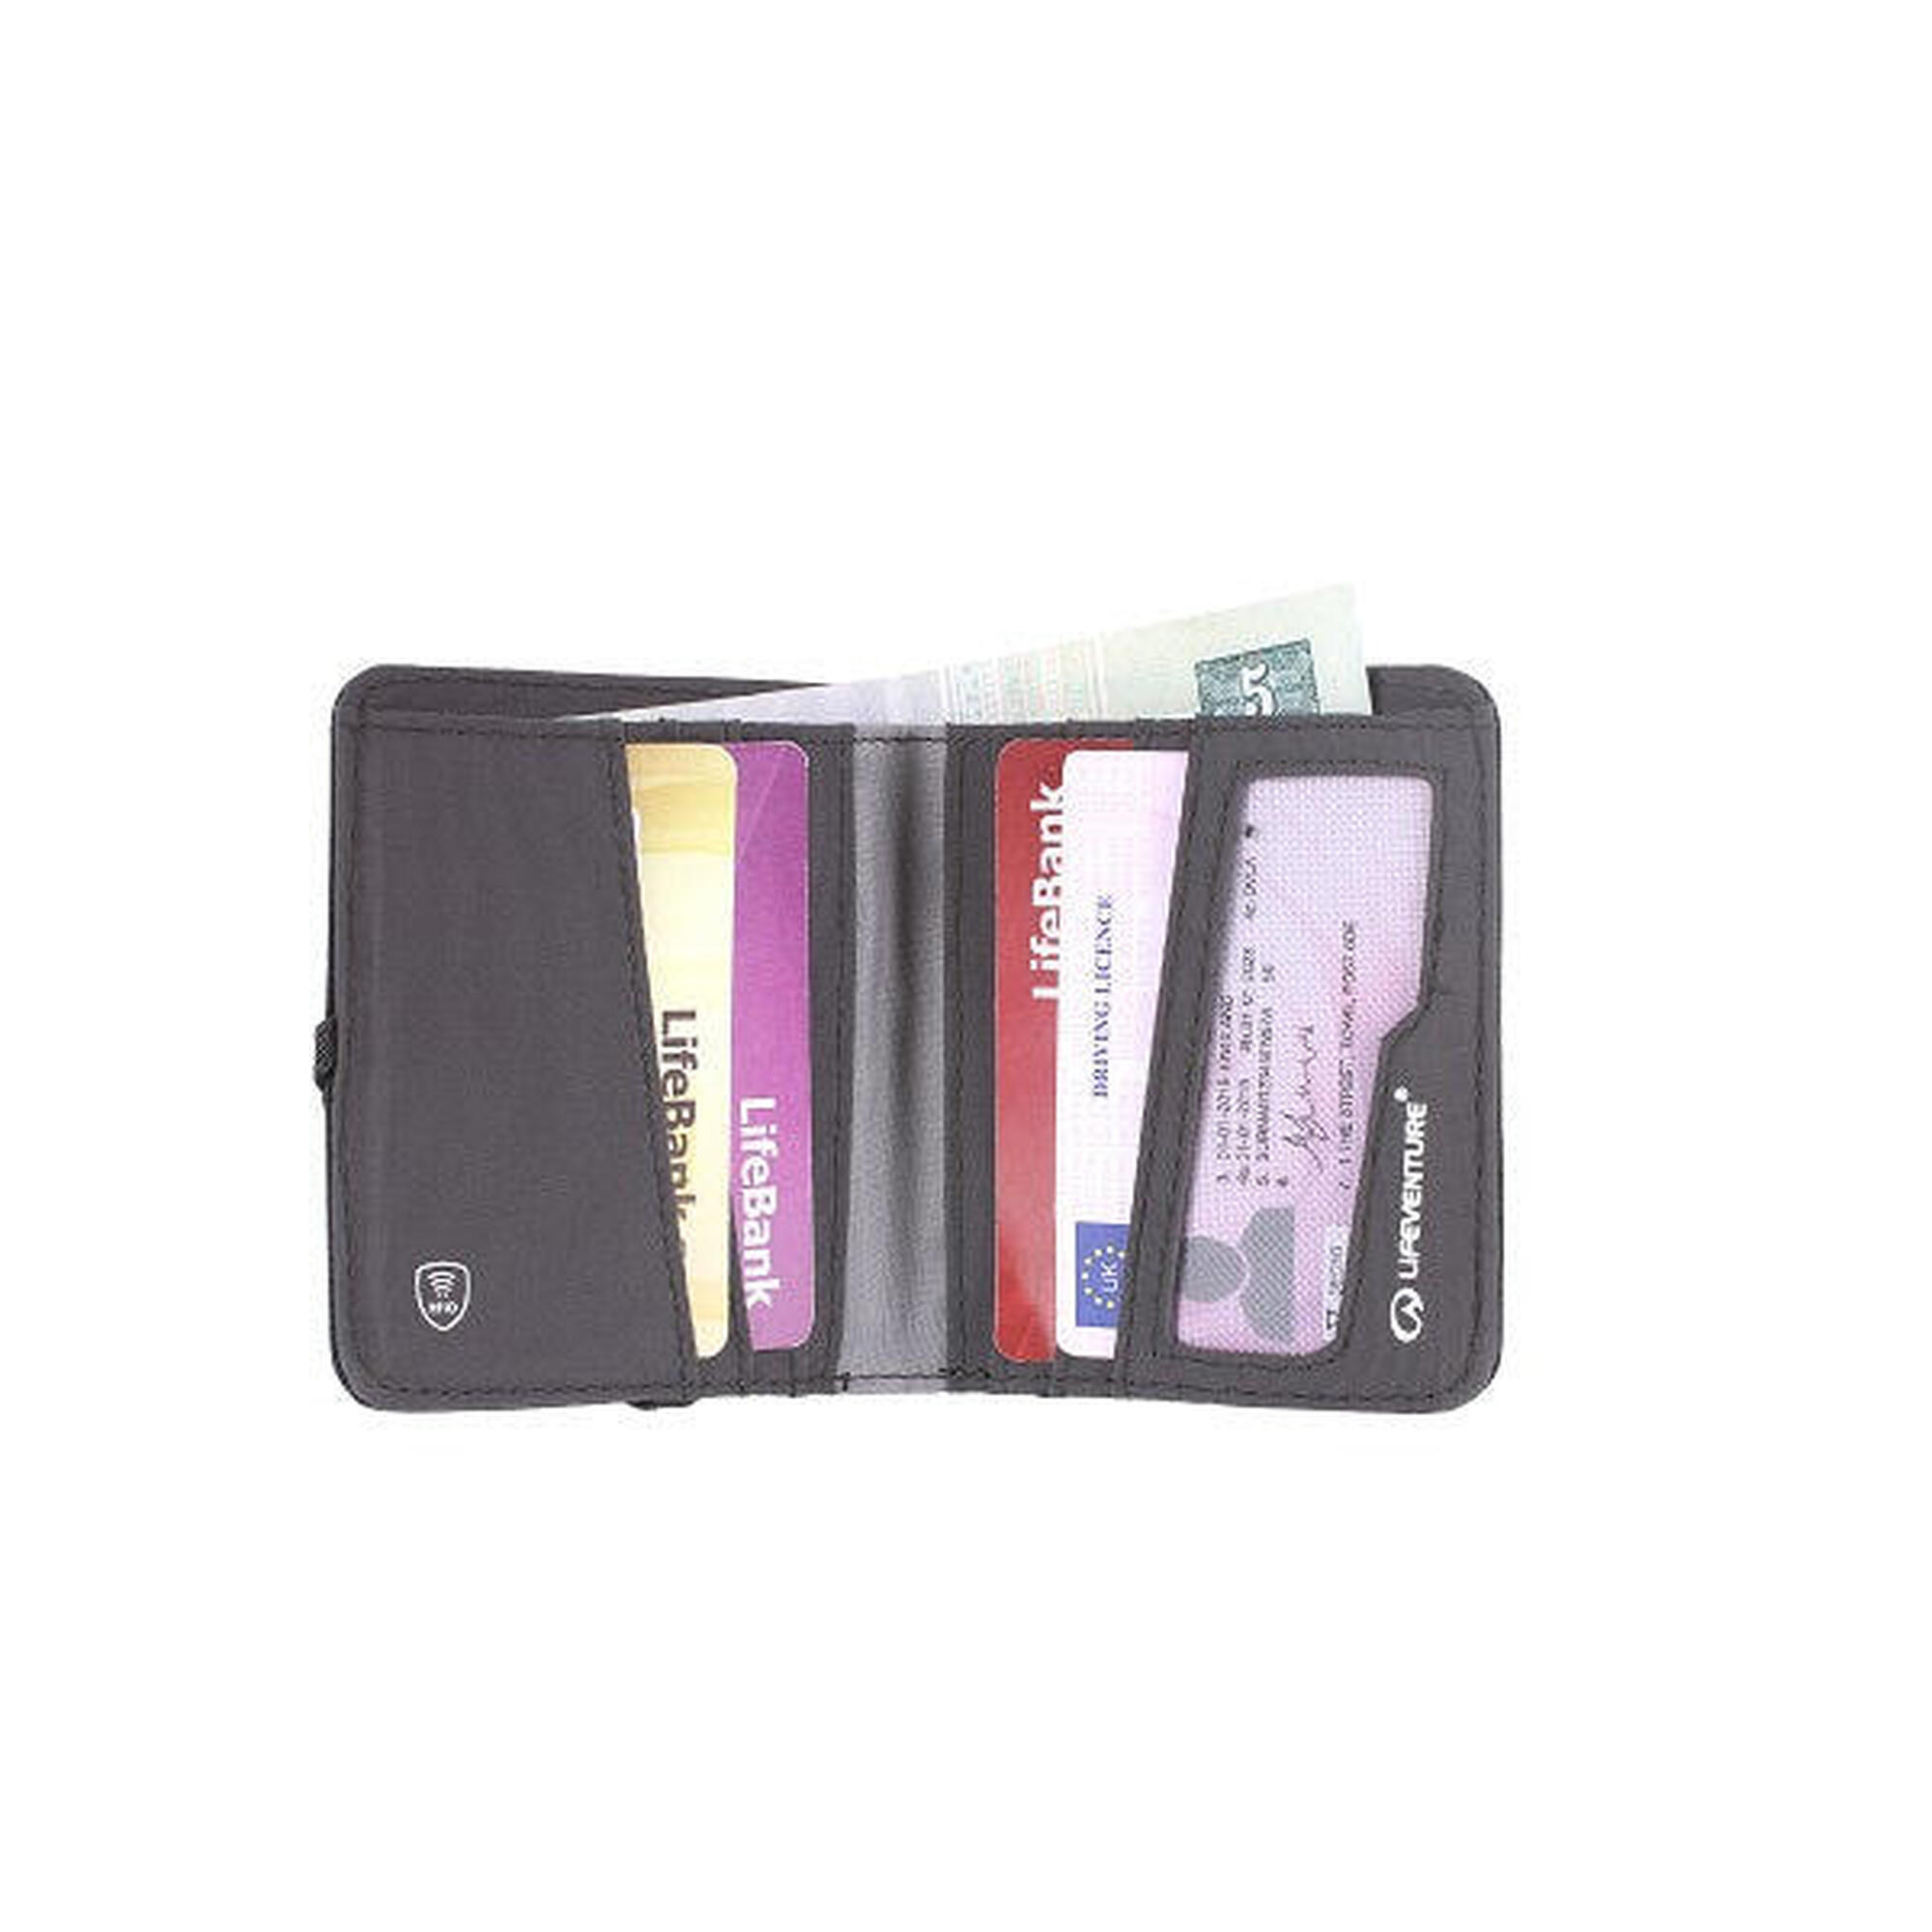 袖珍環保防盜RFID卡錢包 - 灰色